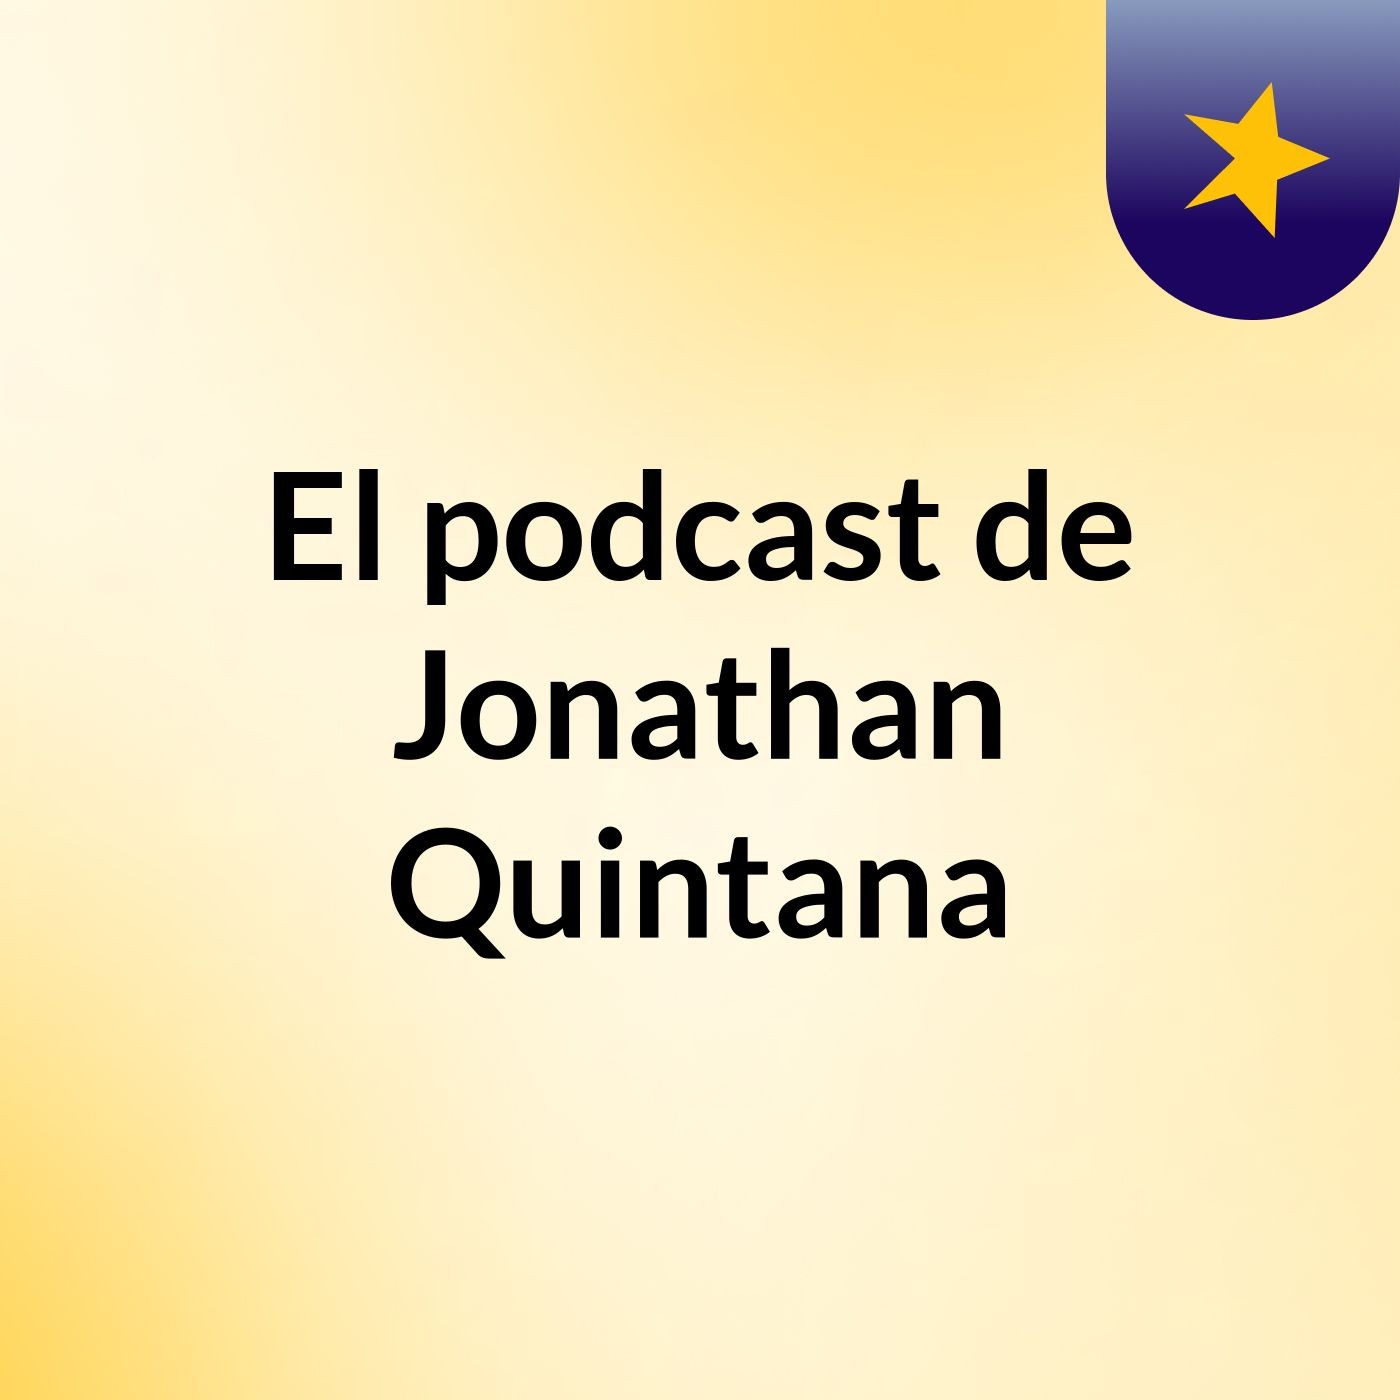 El podcast de Jonathan Quintana